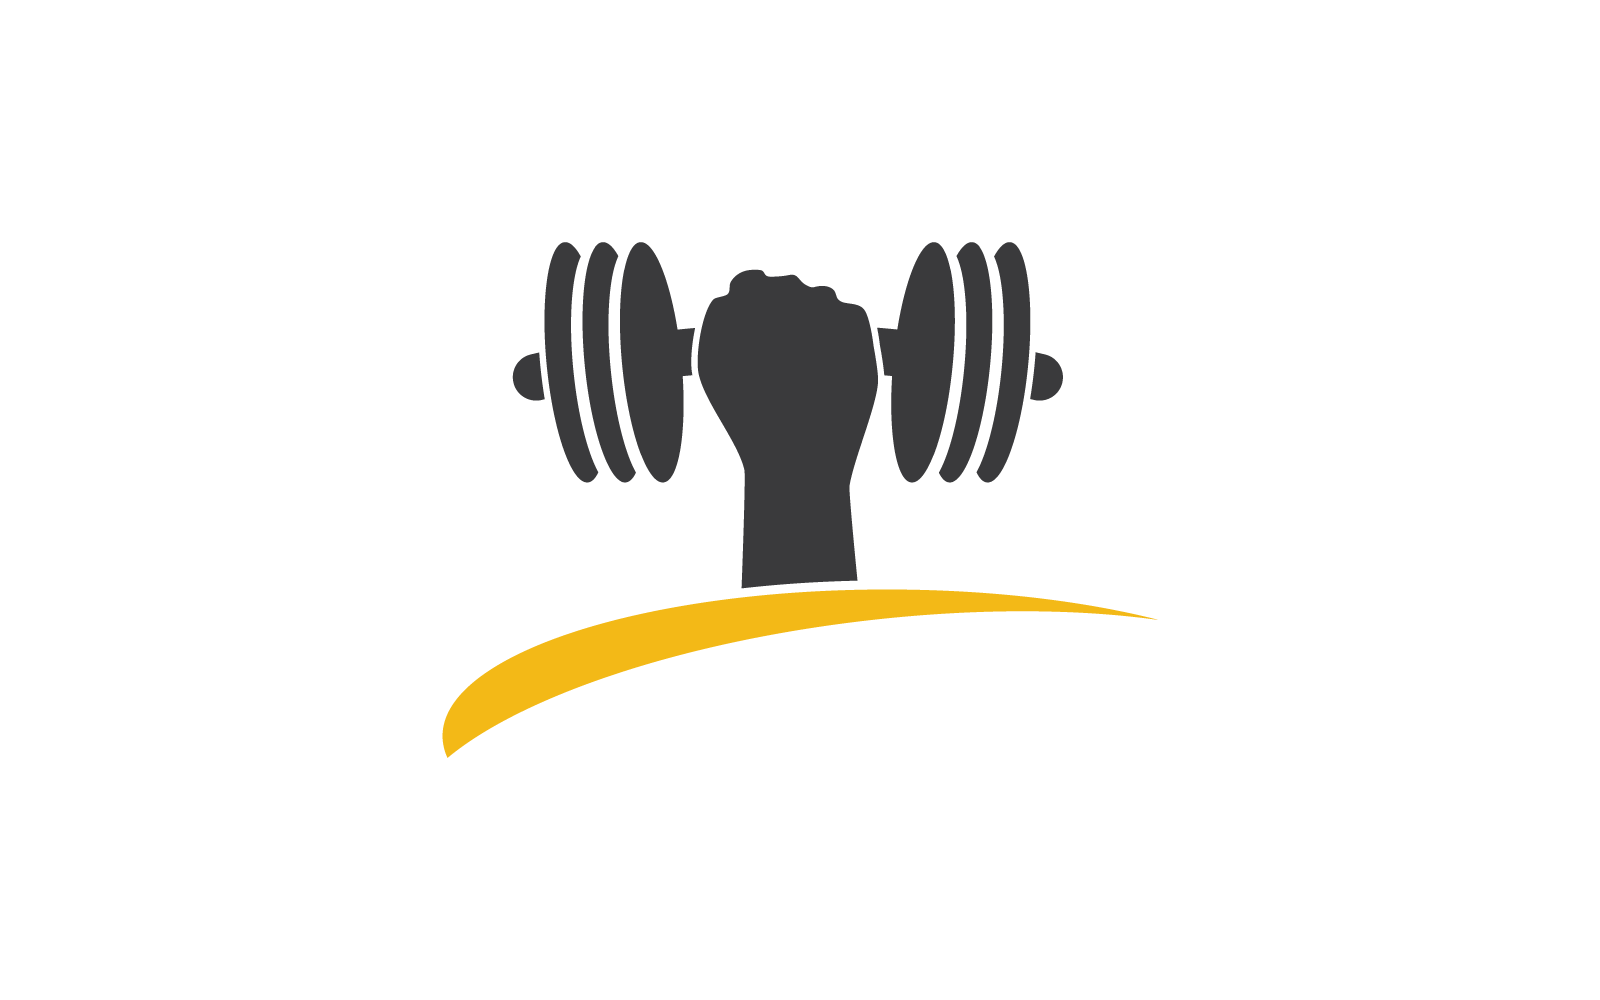 Gym logo vector design template